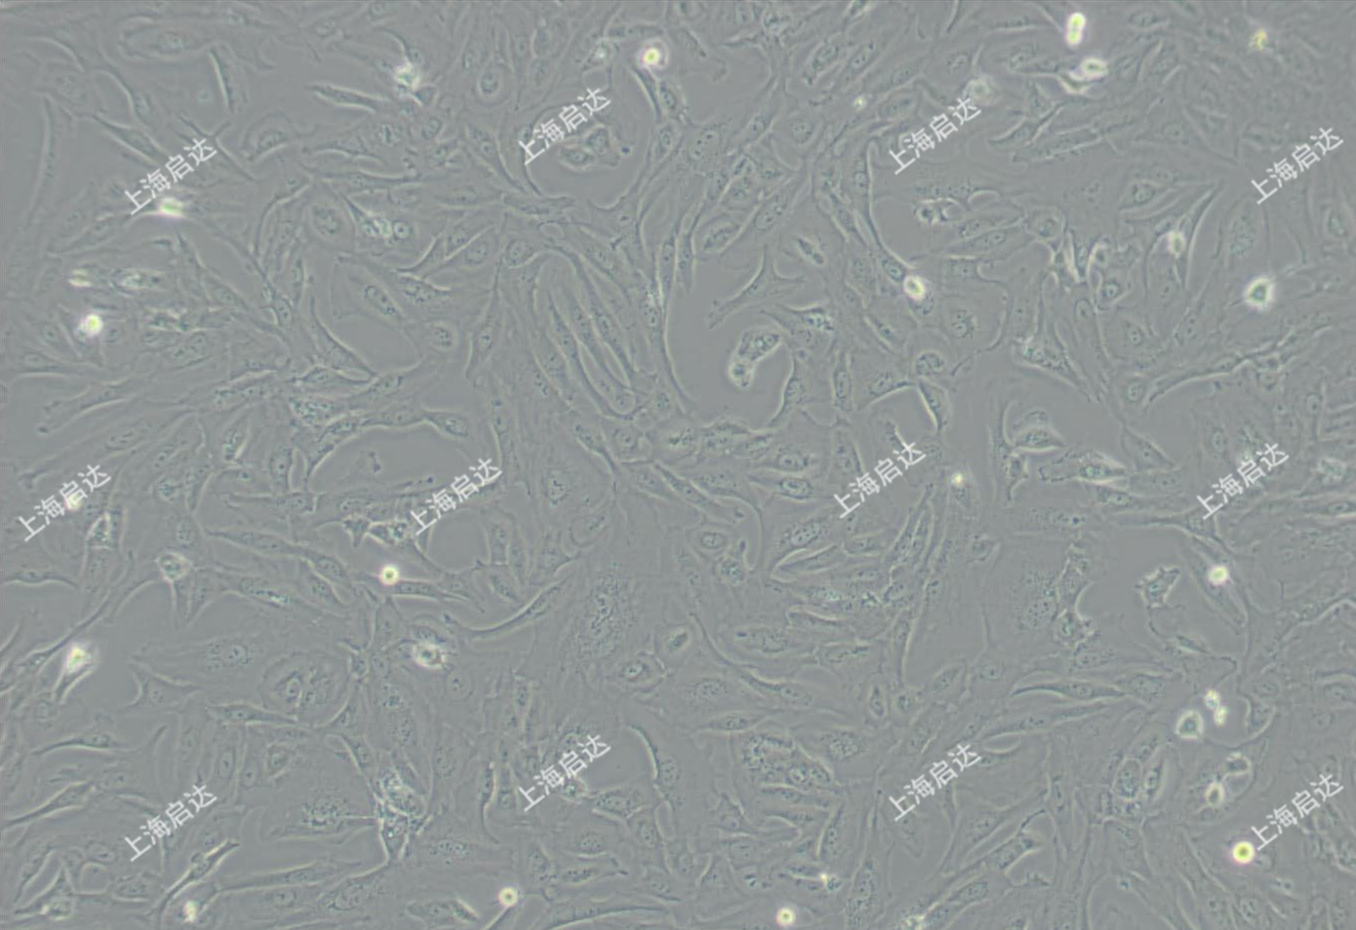 SW1353 [SW 1353, SW-1353]人软骨肉瘤细胞